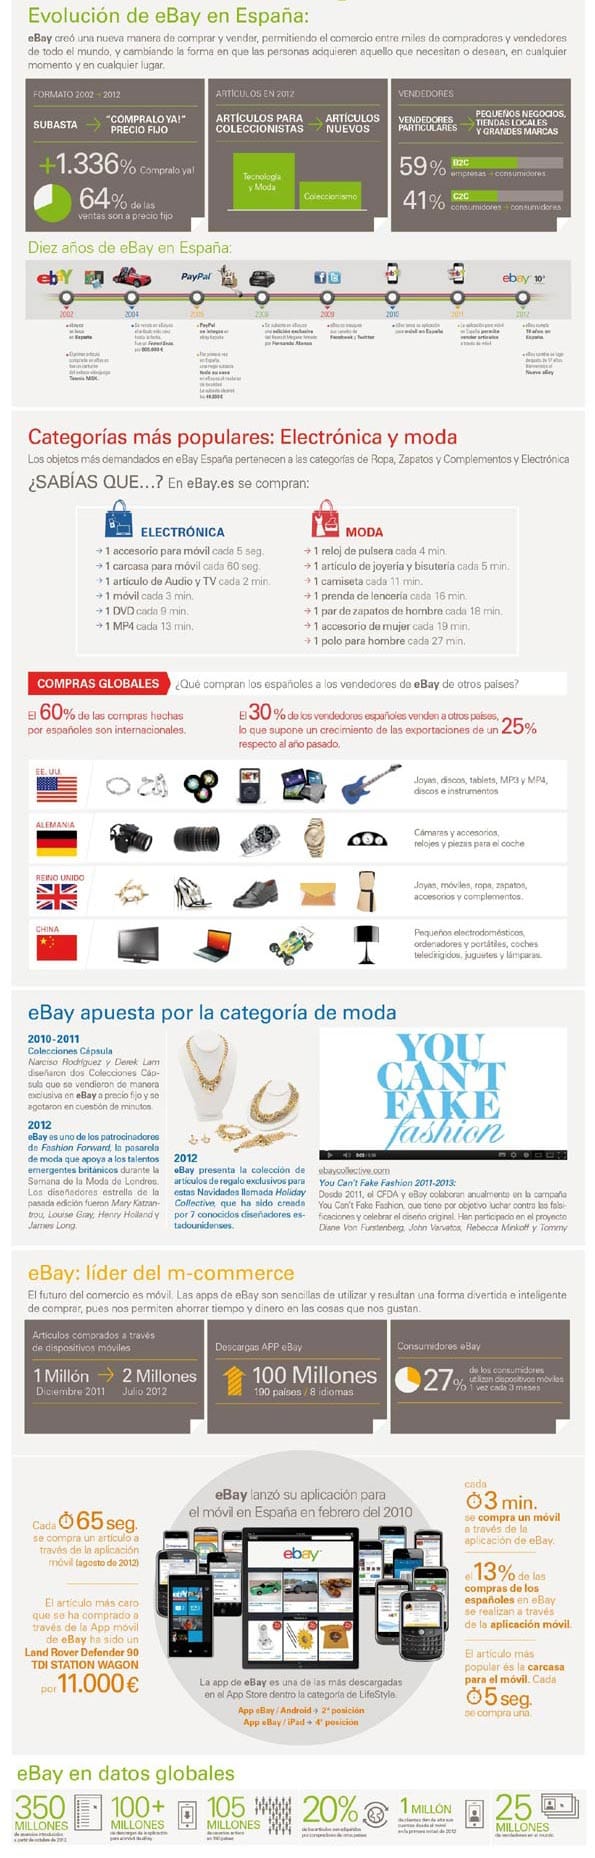 Infografía con detalle de los 10 años de eBay en España.